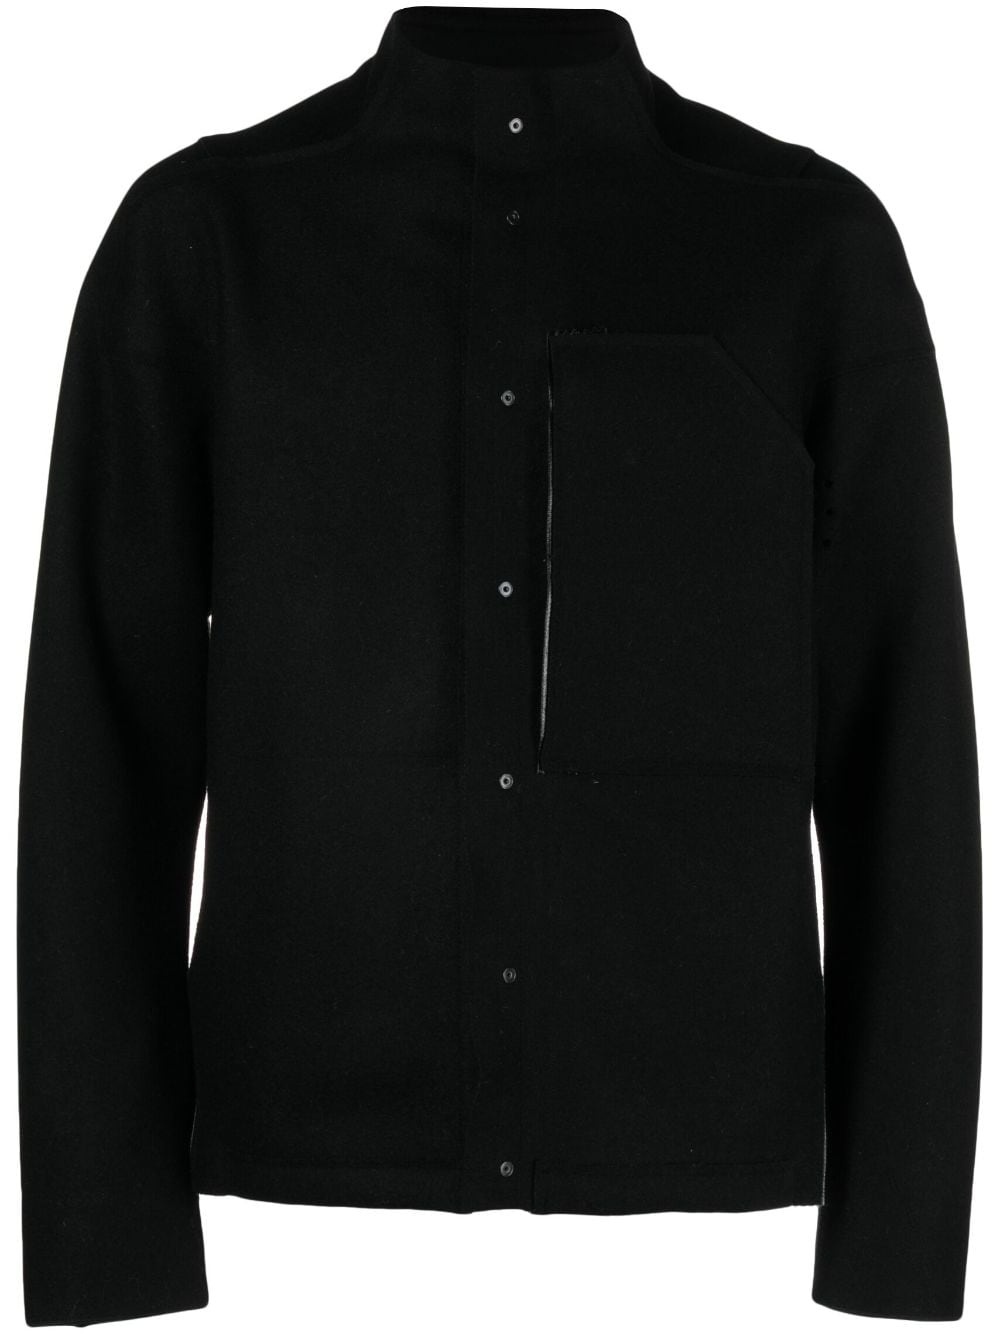 J70-BU wool shirt jacket - 1